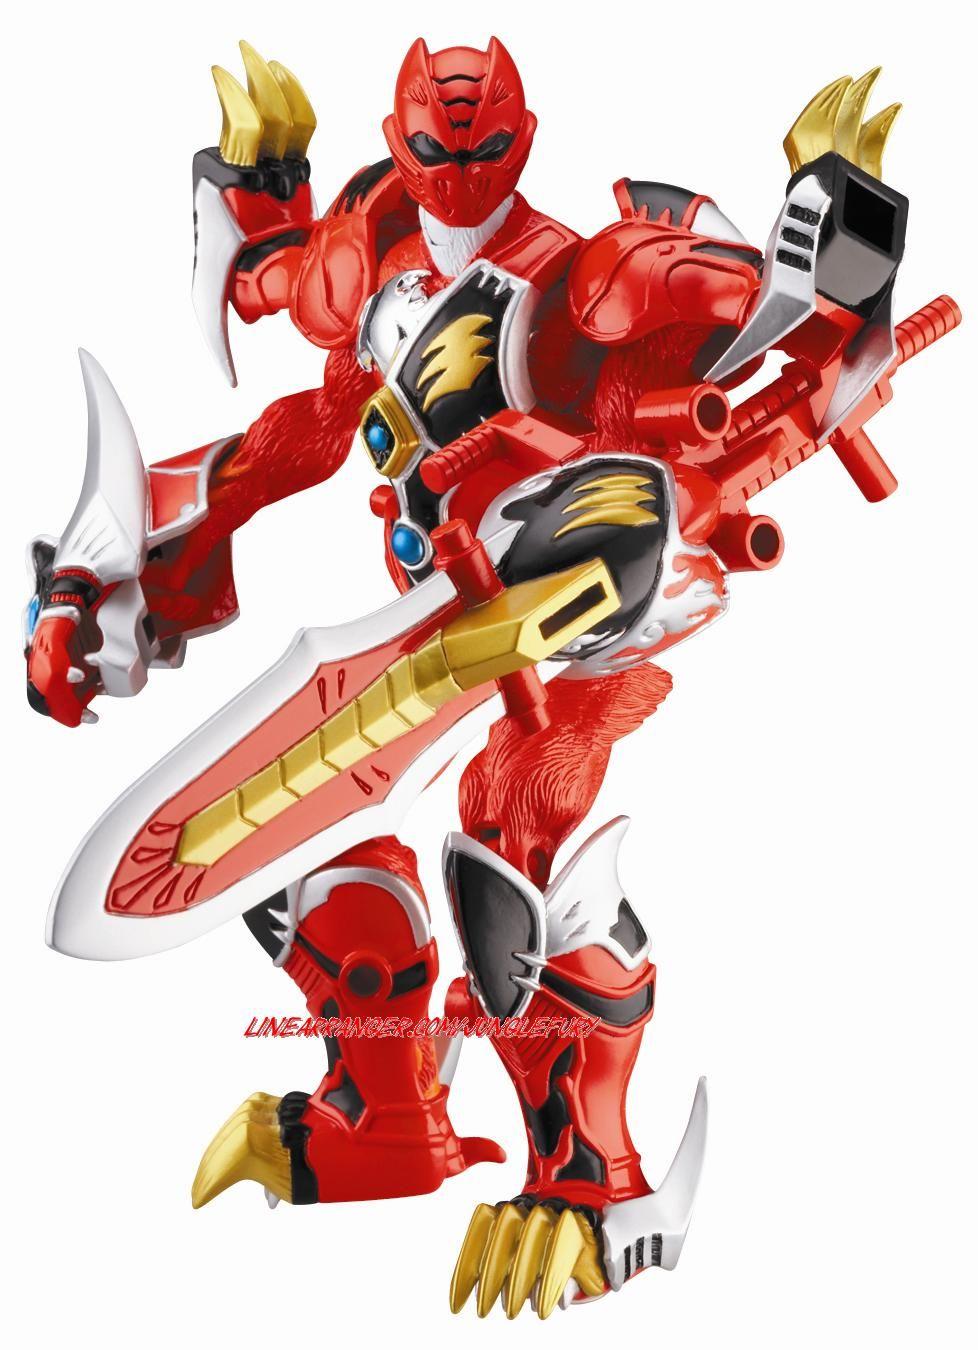 Power Rangers Jungle Fury Red Ranger #battlizer. Power rangers toys